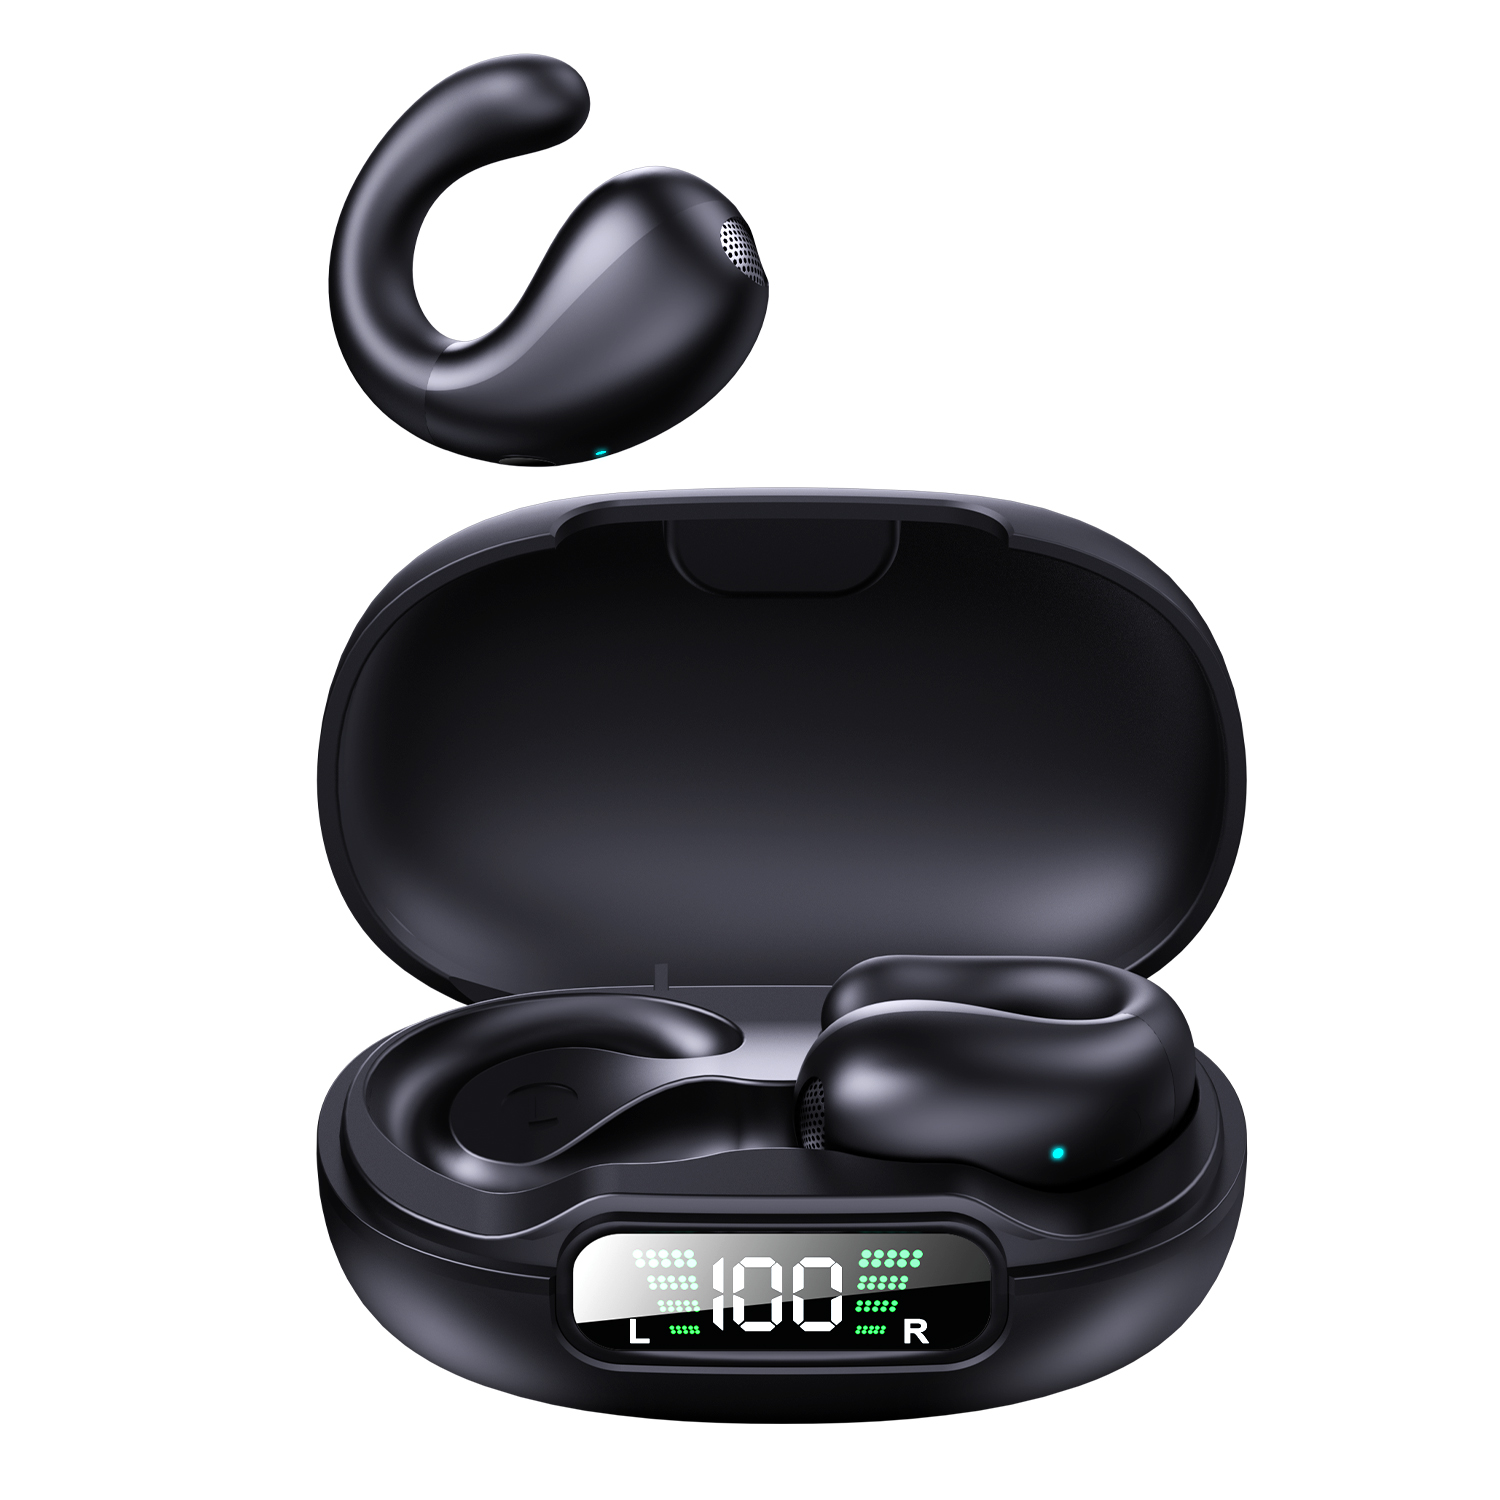 Yyk-Q92 Tws Bluetooth V5.0 سماعات الأذن سماعات ألعاب منخفضة زمن انتقال لاسلكي سماعات أذن باس أجهزة تسمم مع الميكروفون